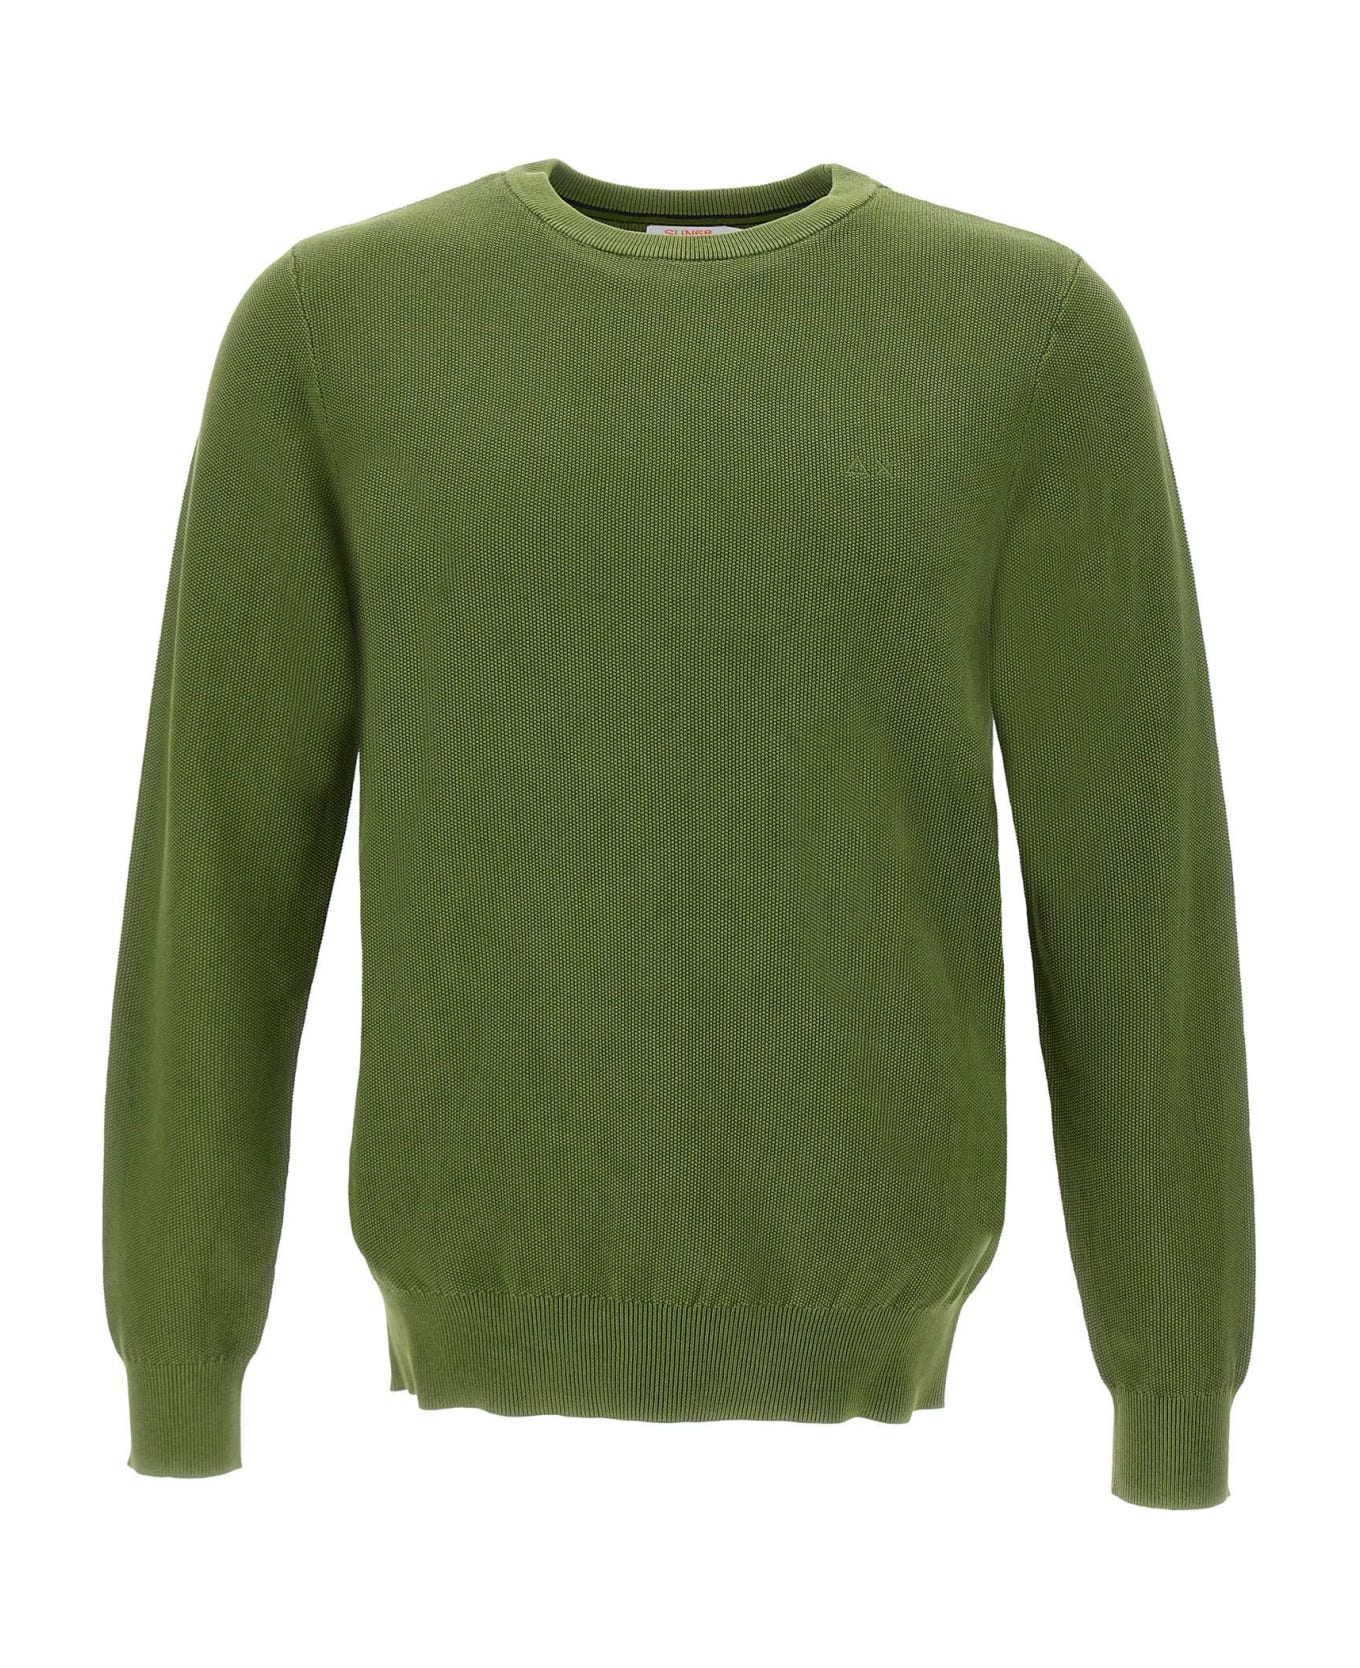 Sun 68 "round Vintage" Sweater Cotton - GREEN